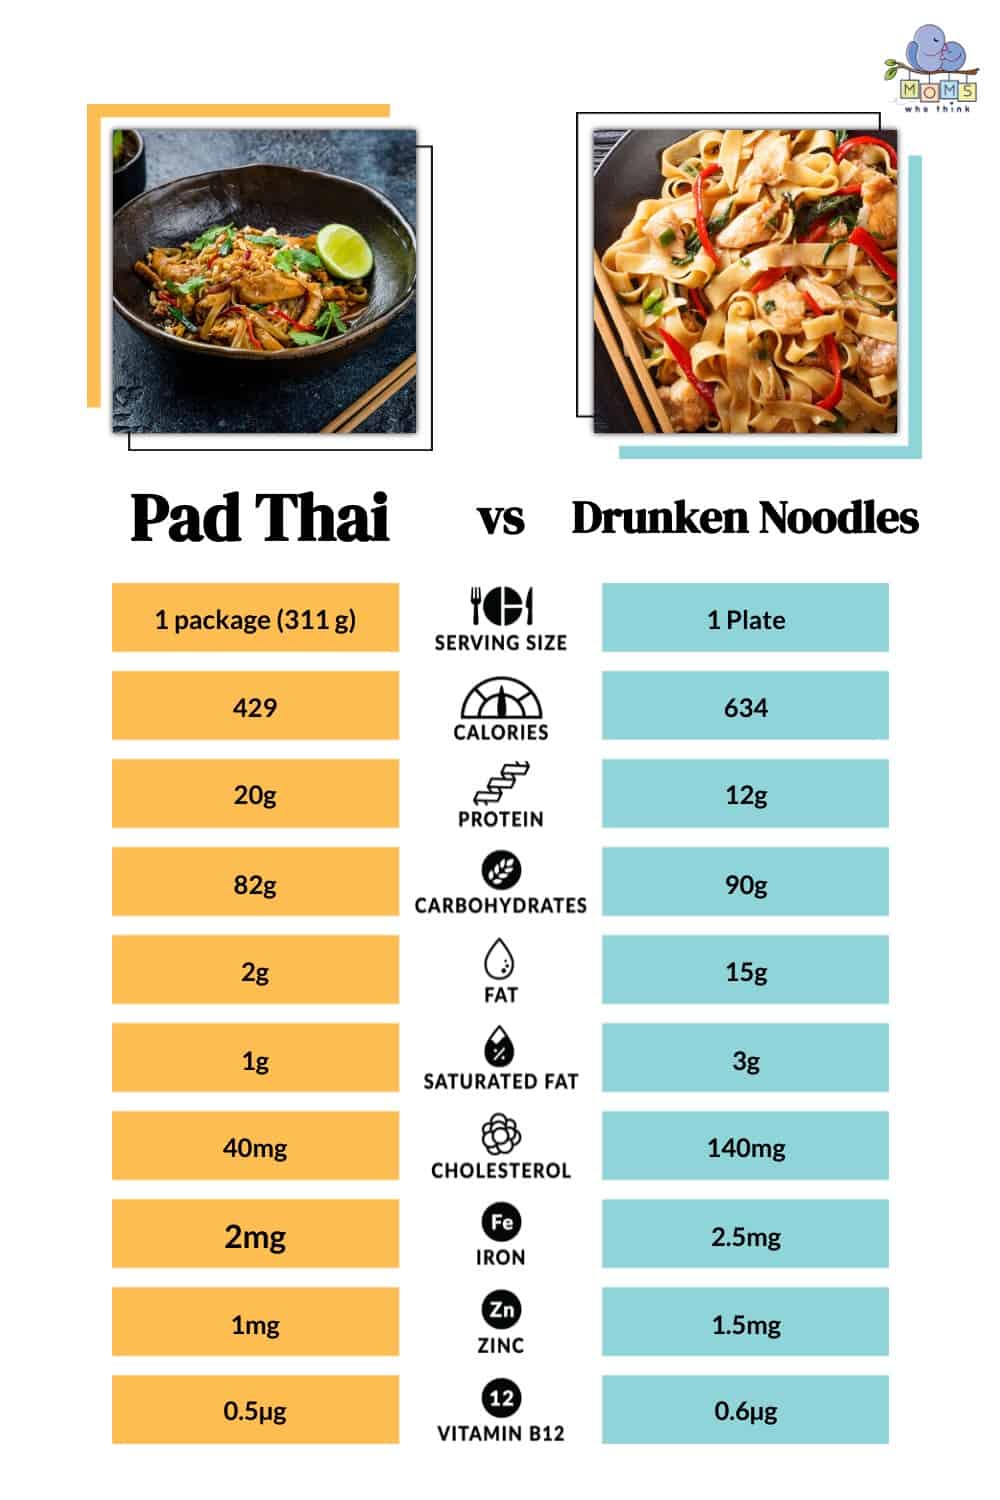 Pad Thai vs Drunken Noodles Calories and Nutrition